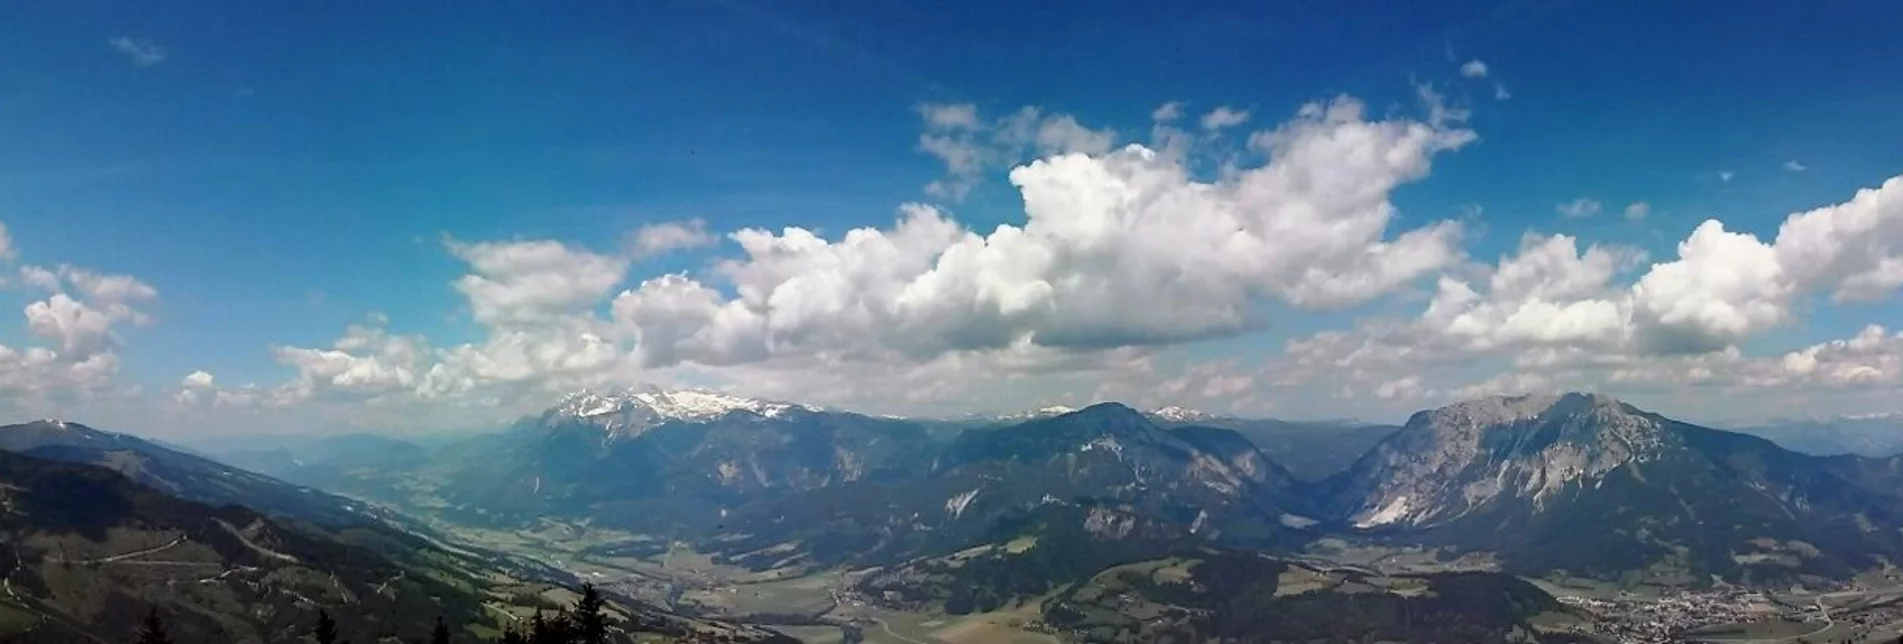 Bergtour Kochofen Rundtour über Schladminger Alm - Touren-Impression #1 | © Erlebnisregion Schladming-Dachstein